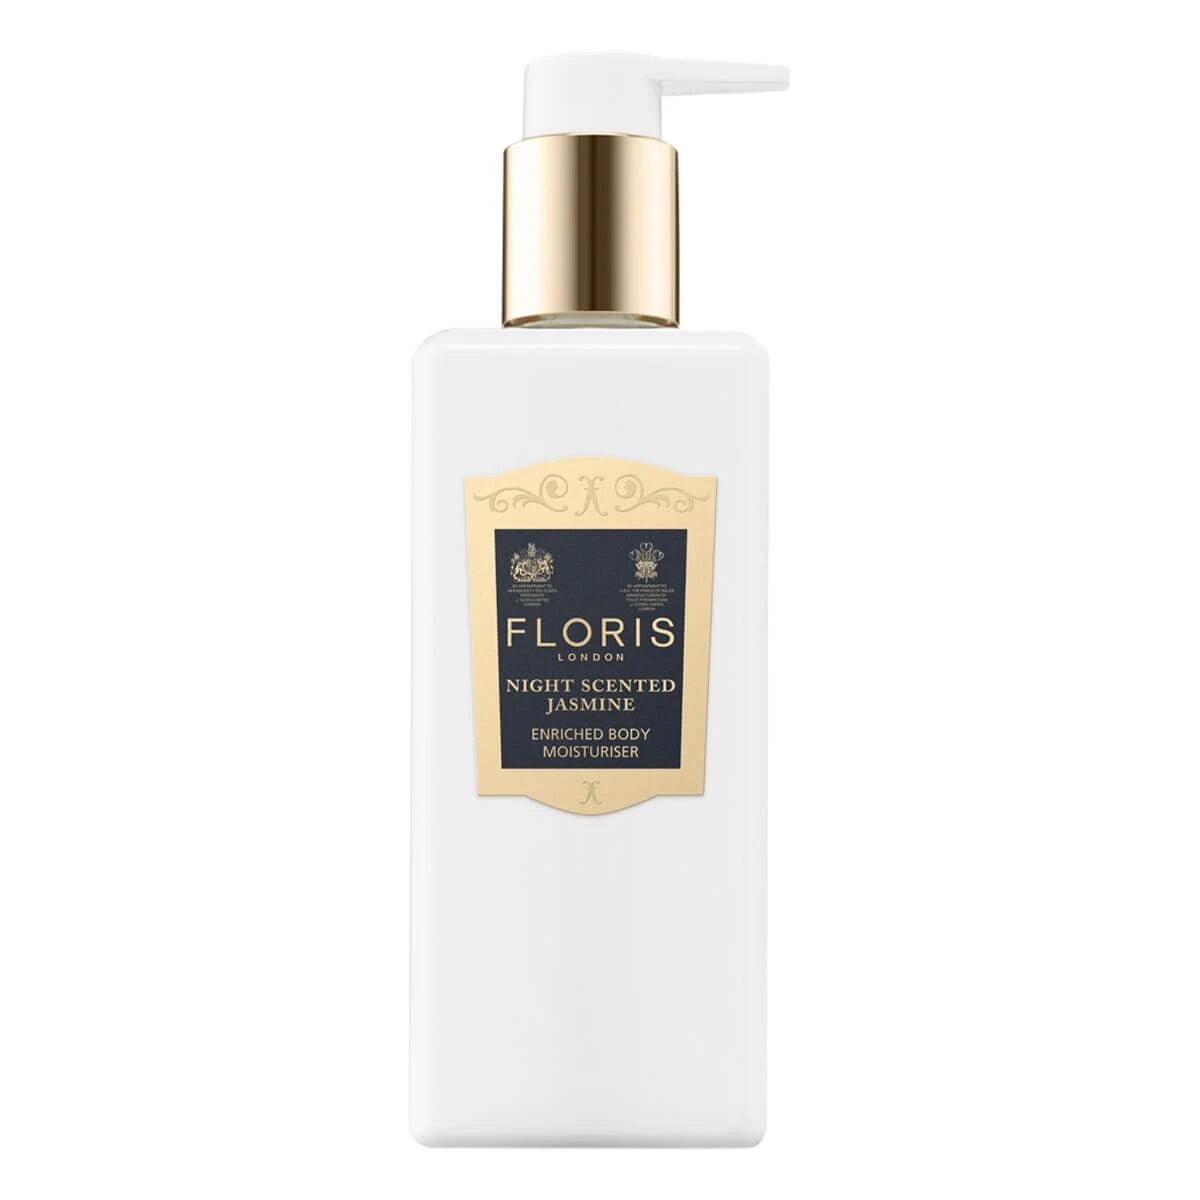 Floris Night Scented Jasmine, Enriched Body Moisturiser | Body Lotion | Floris London | JK SHOP | JK Barber og herre frisør | Lavepriser | Best